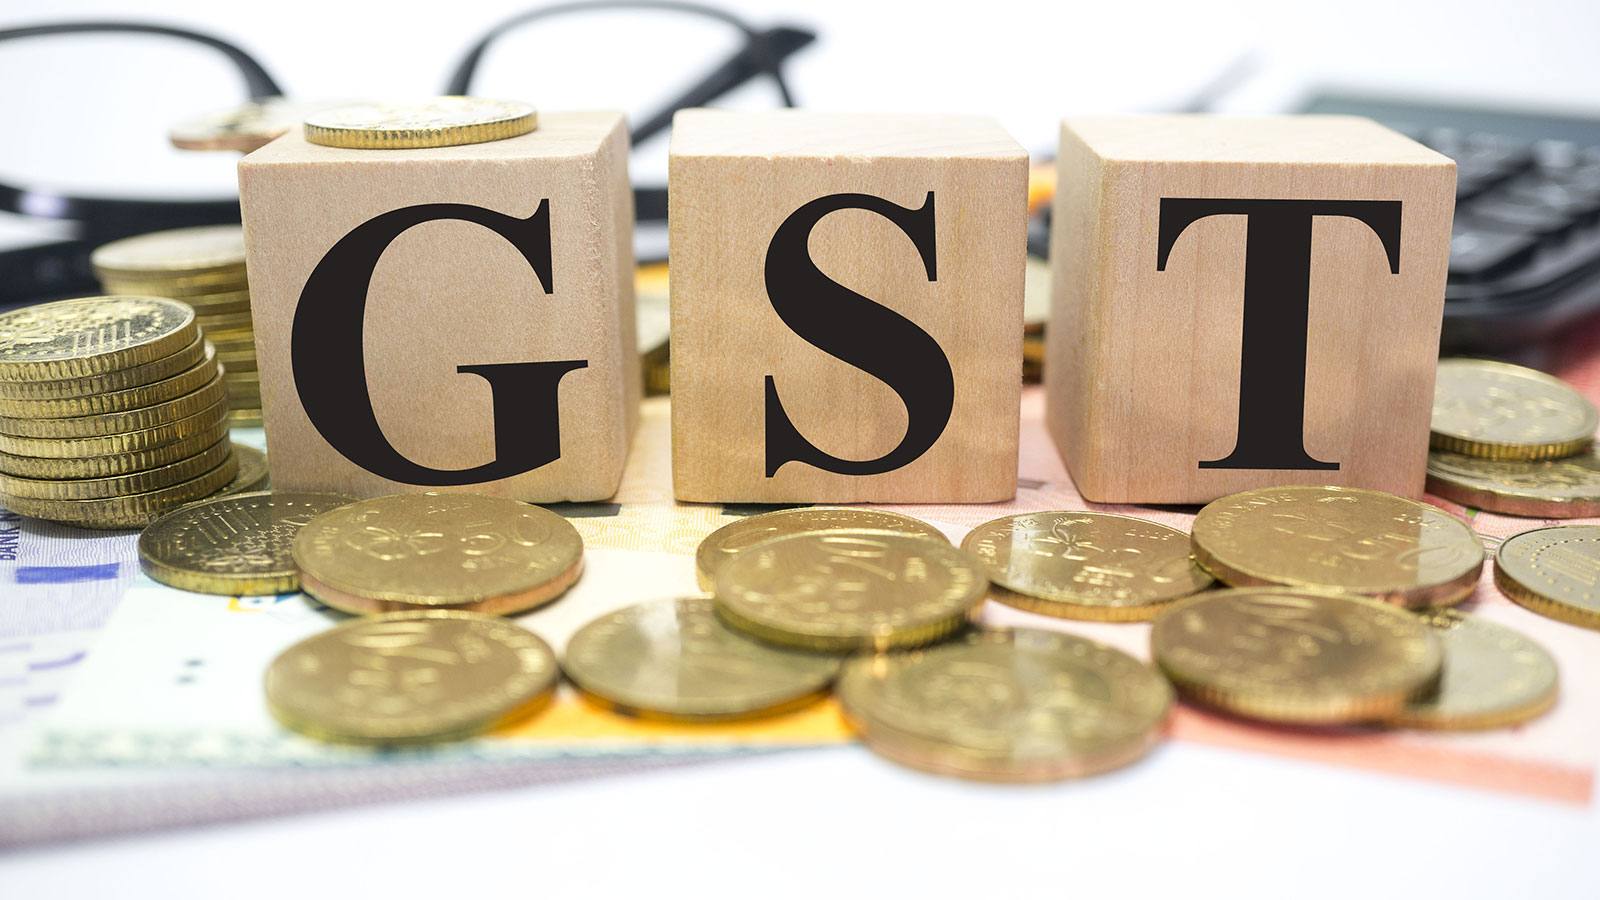 cheaper-under-gst GST price under tax dept observation